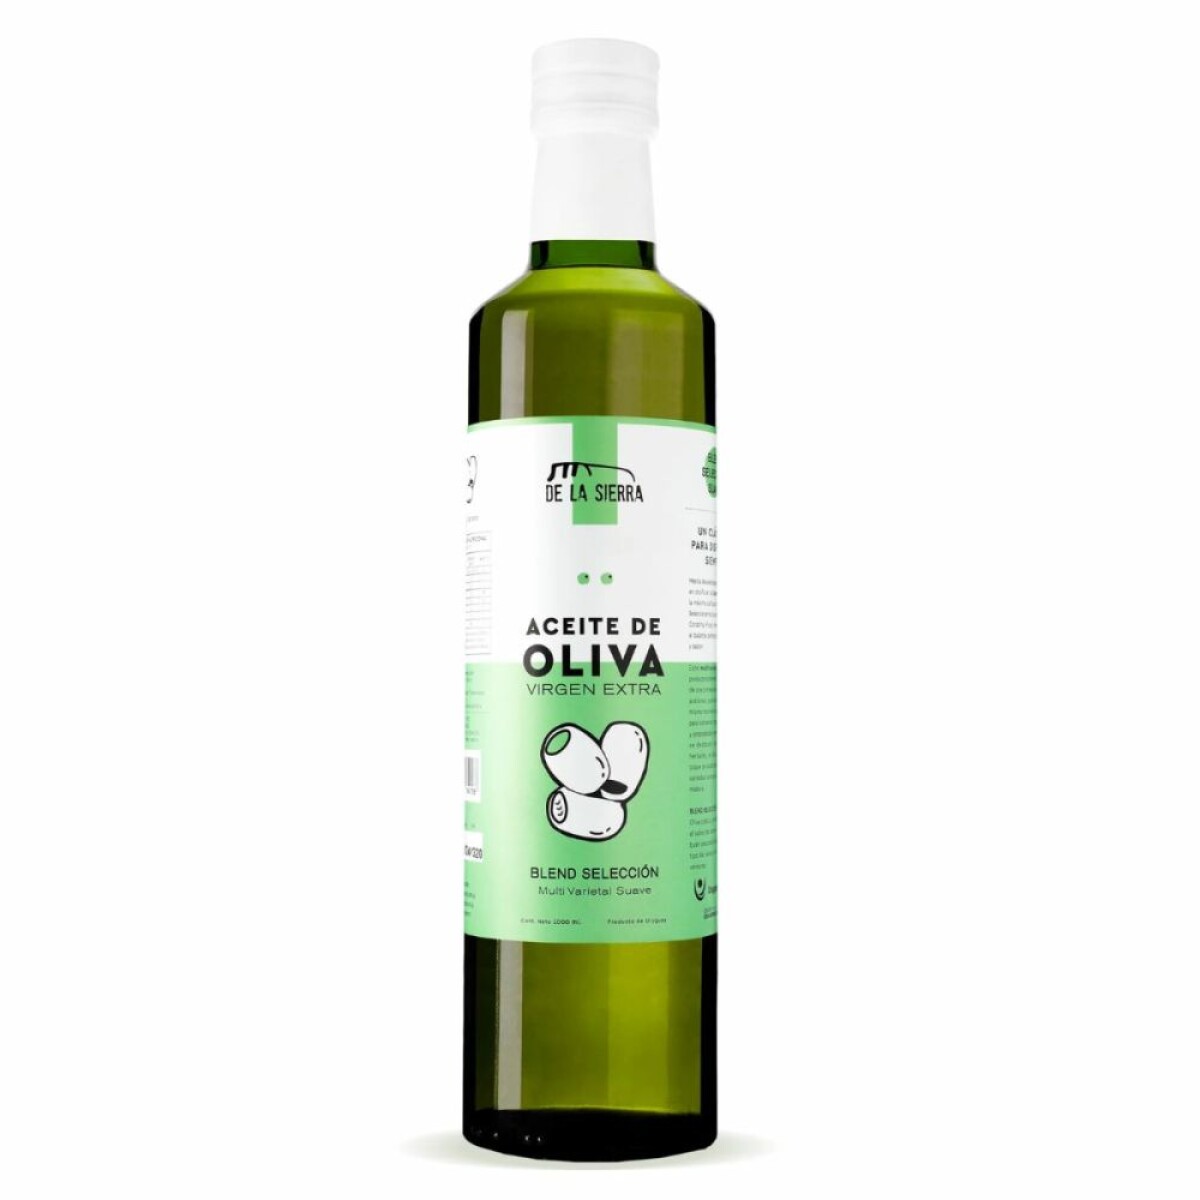 Aceite de oliva blend selección 1lt De la Sierra 